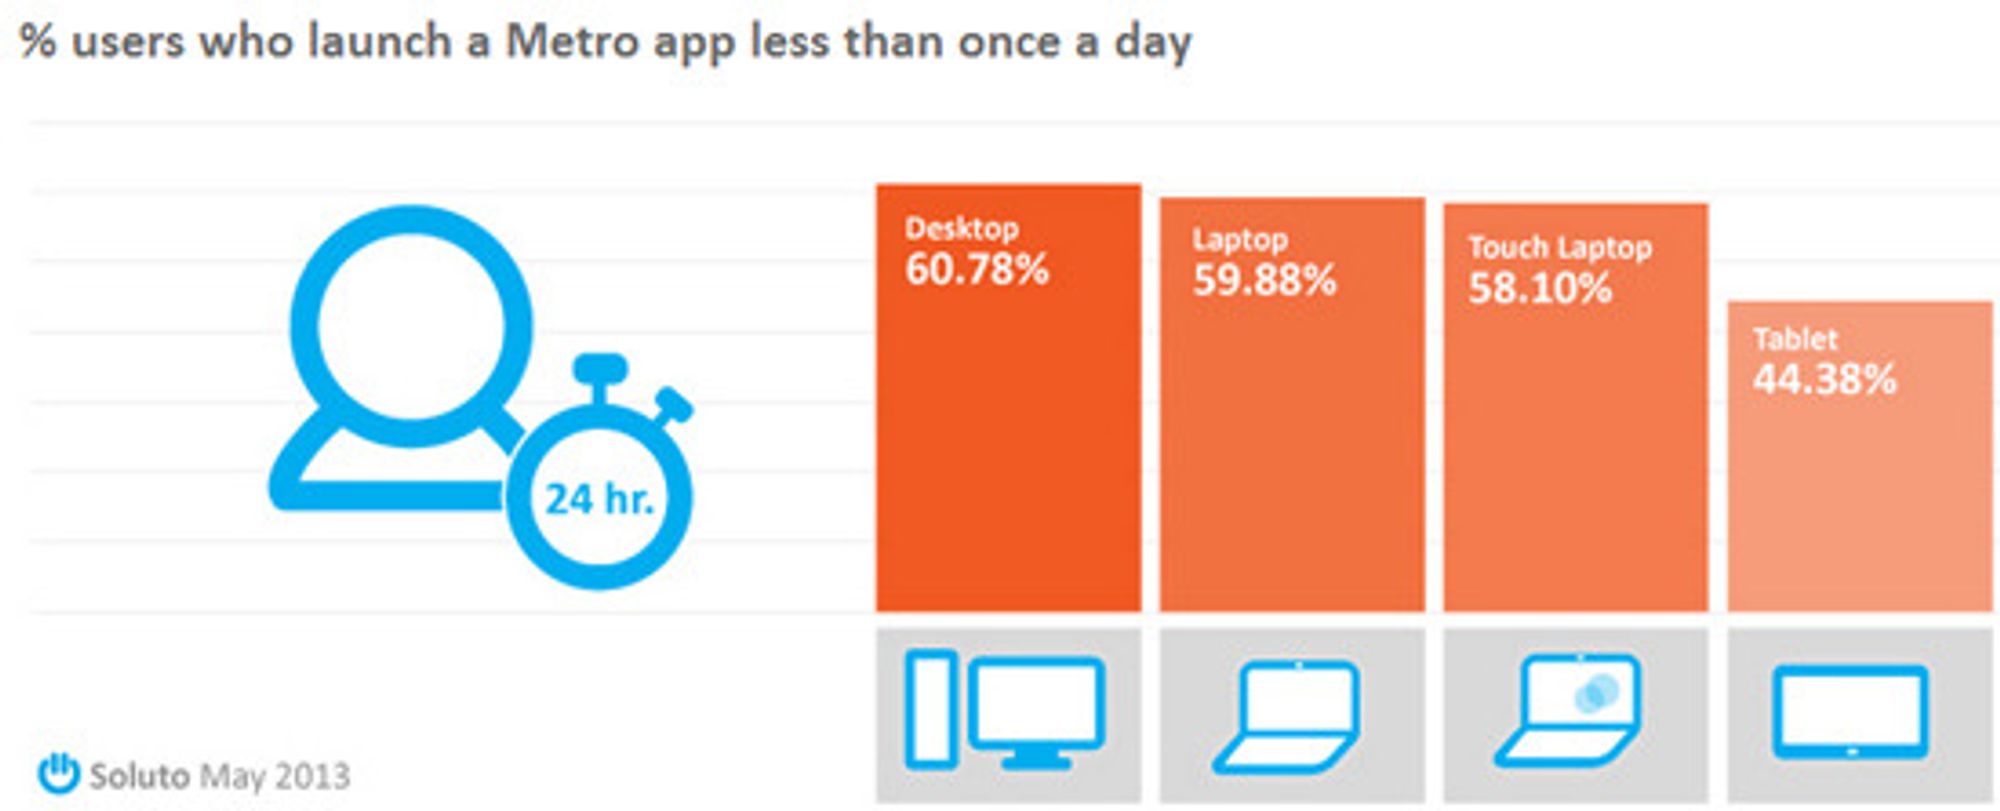 6 av 10 Windows 8-brukere åpner en metro-app sjeldnere enn én gang daglig, ifølge studien.